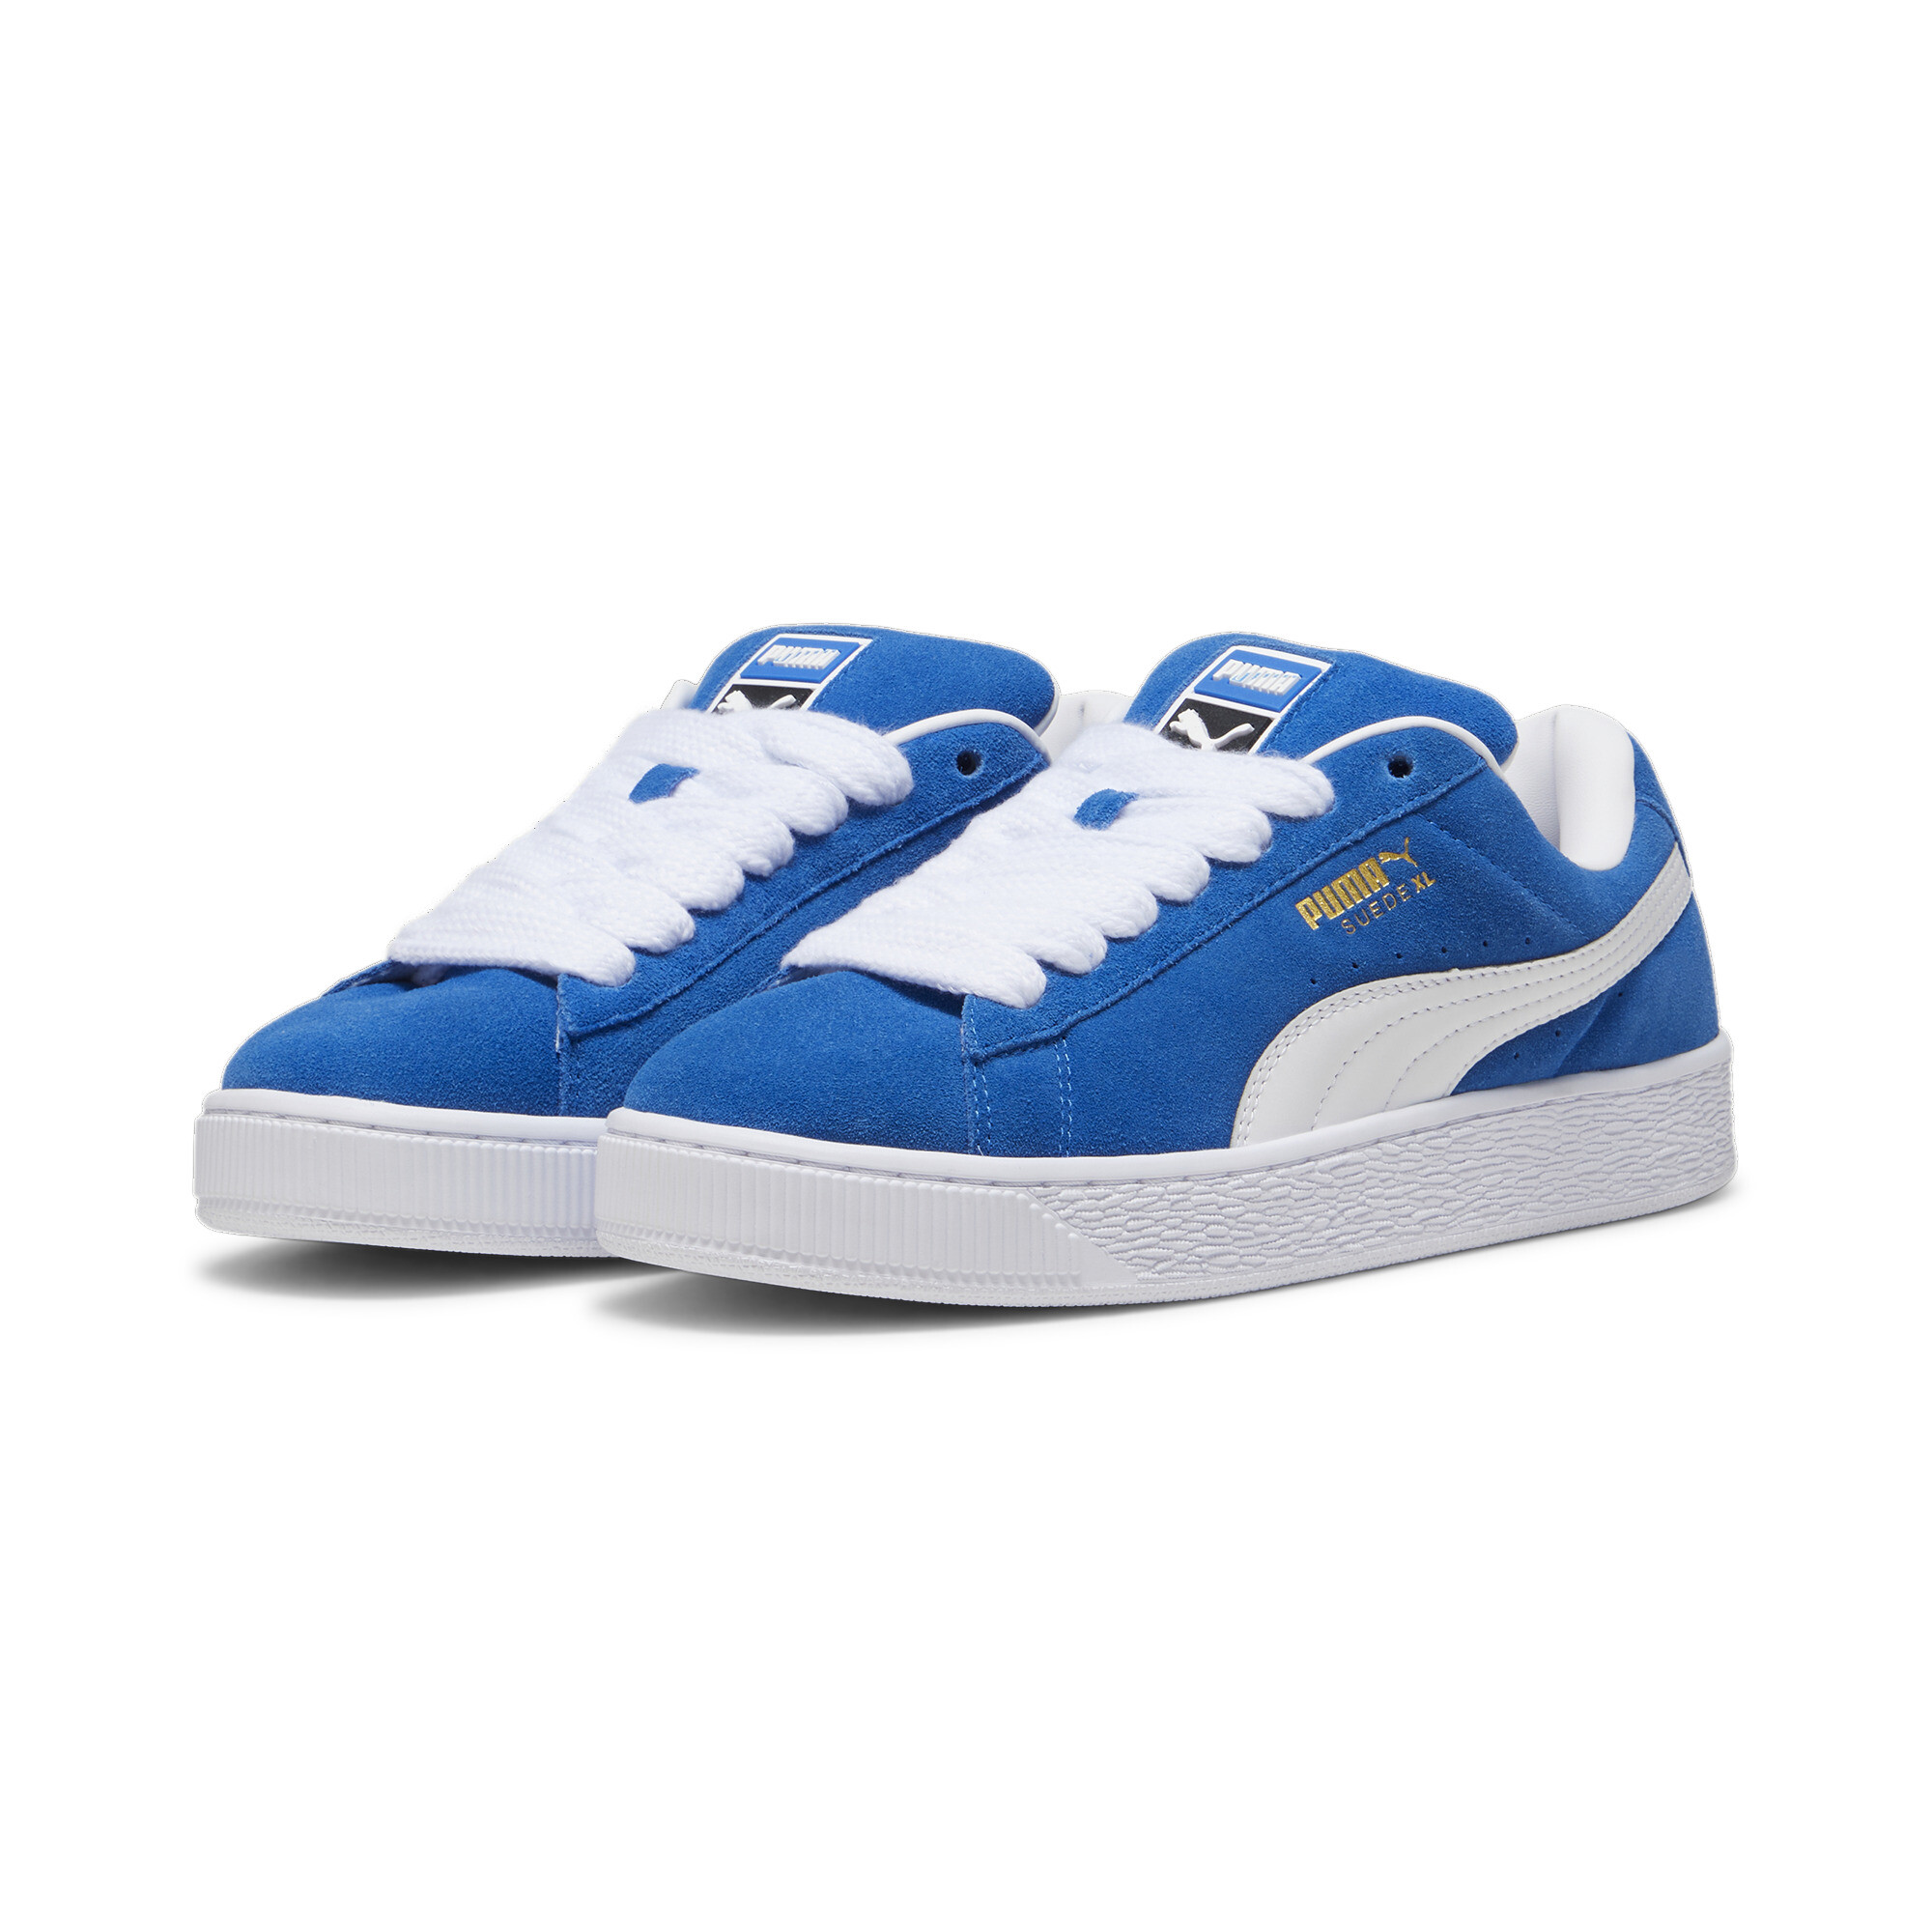 Puma Suede XL Sneakers Unisex, Blue, Size 35.5, Shoes